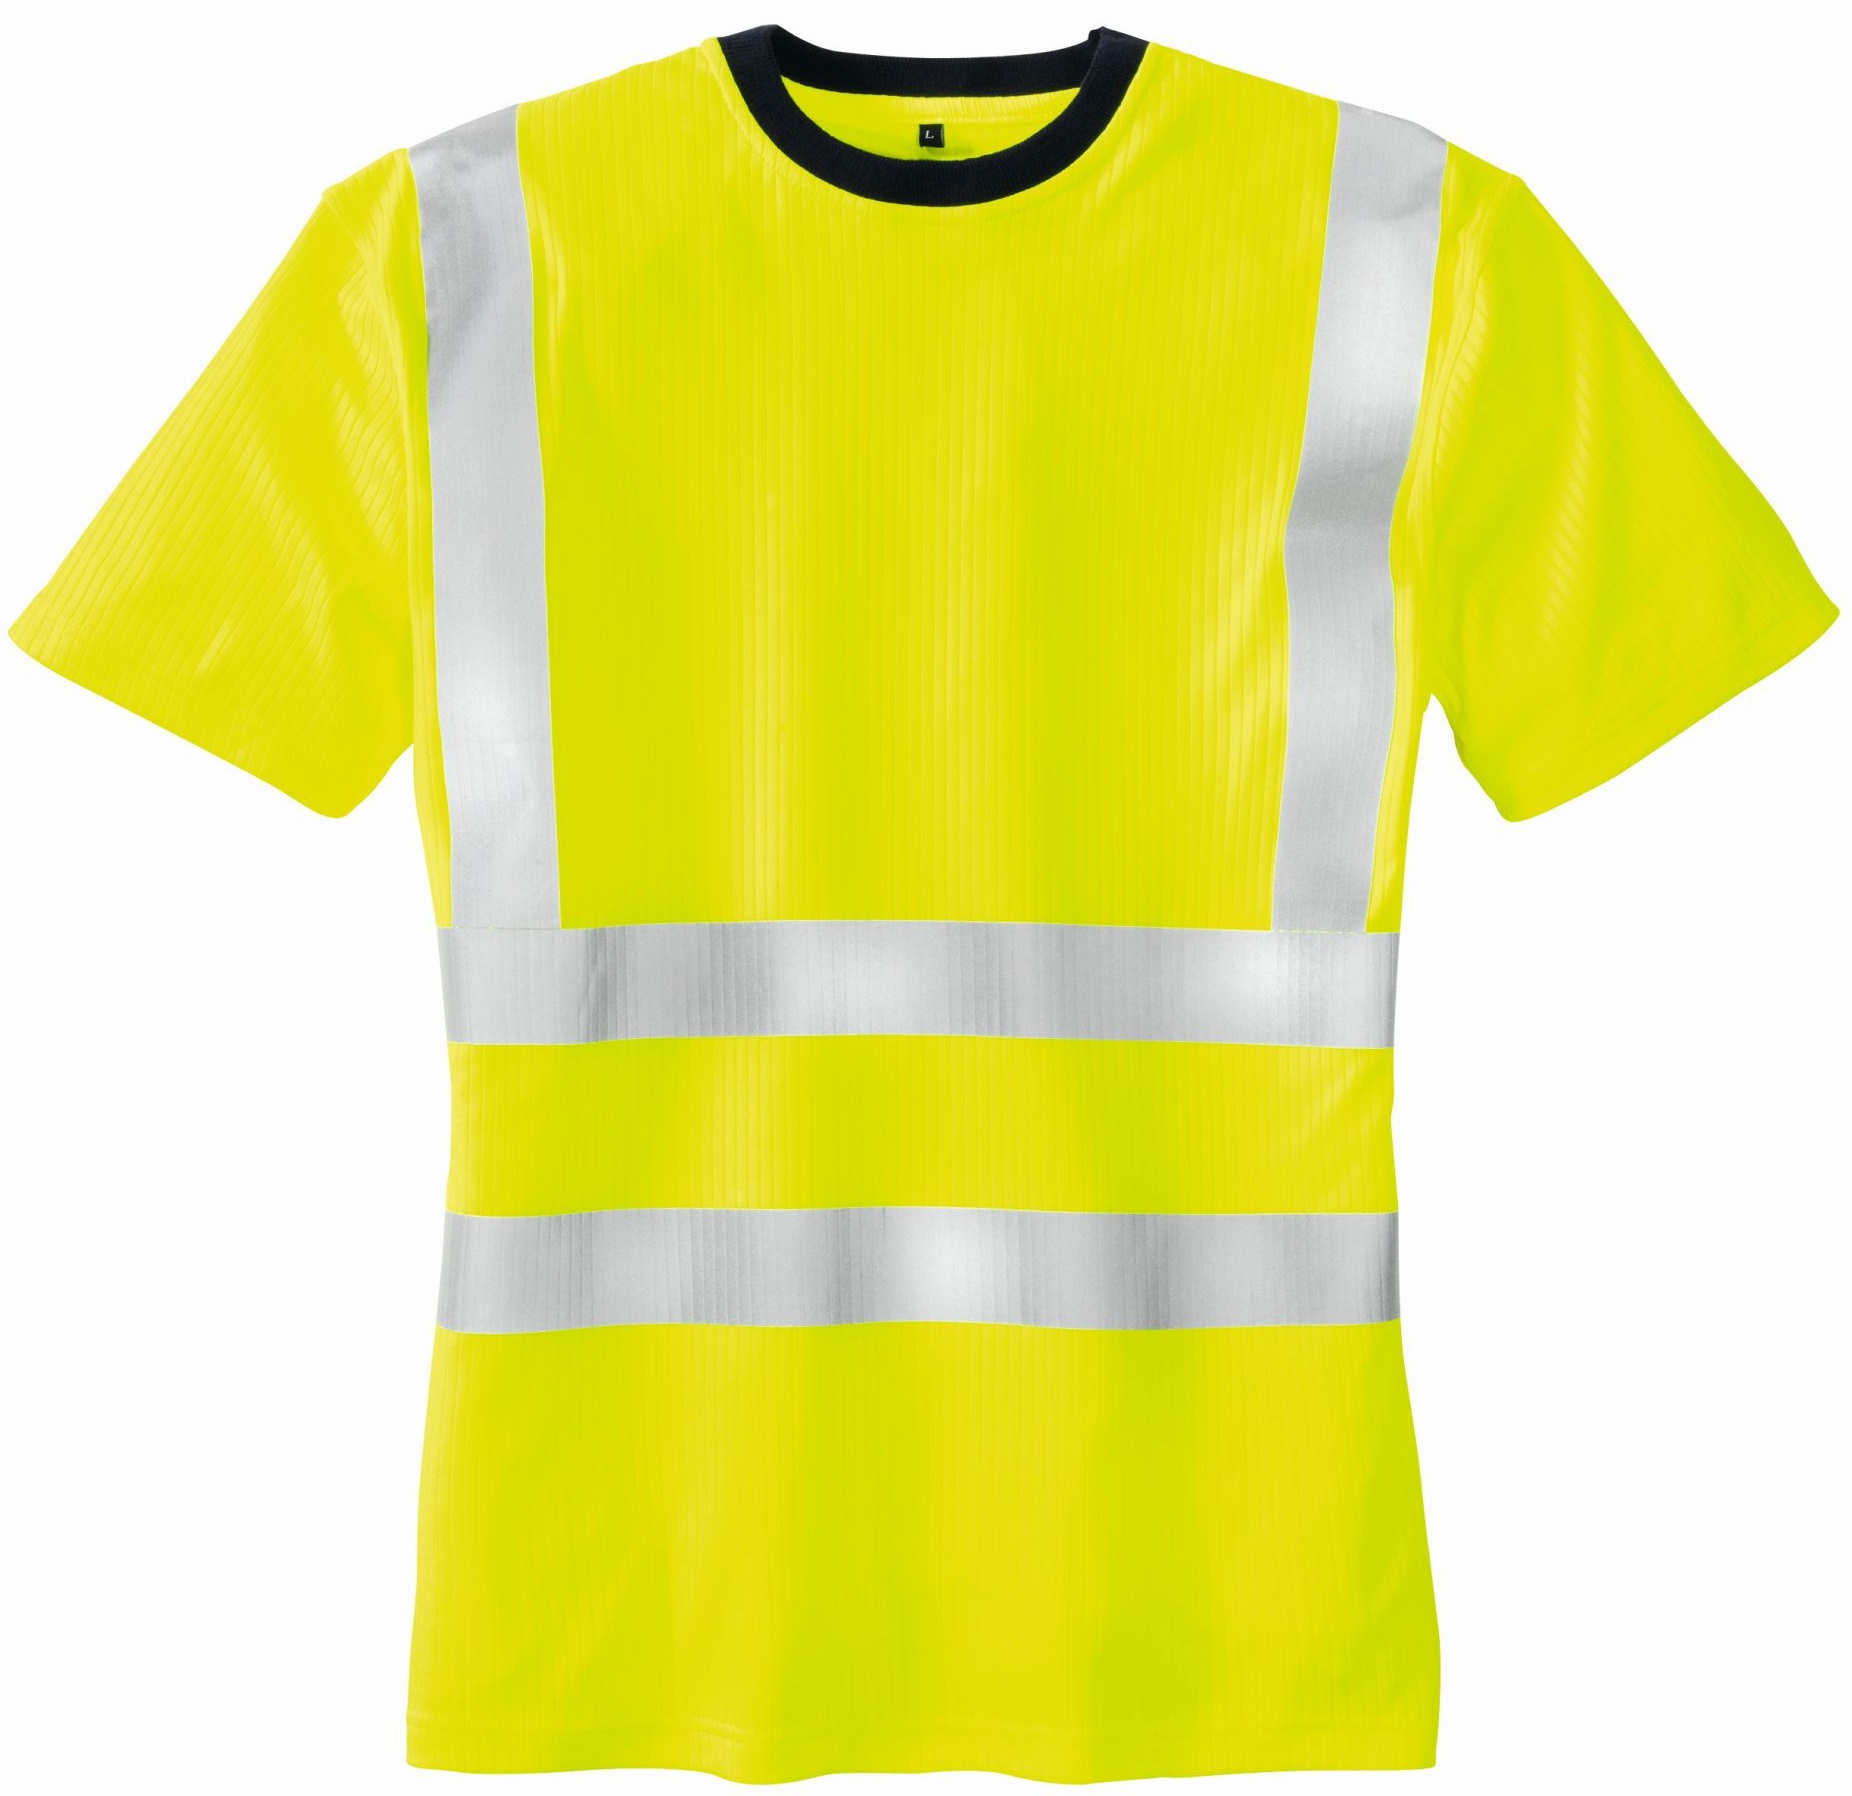 BIG-TEXXOR-Warnschutz, Warn-T-Shirt, Hooge, leuchtgelb